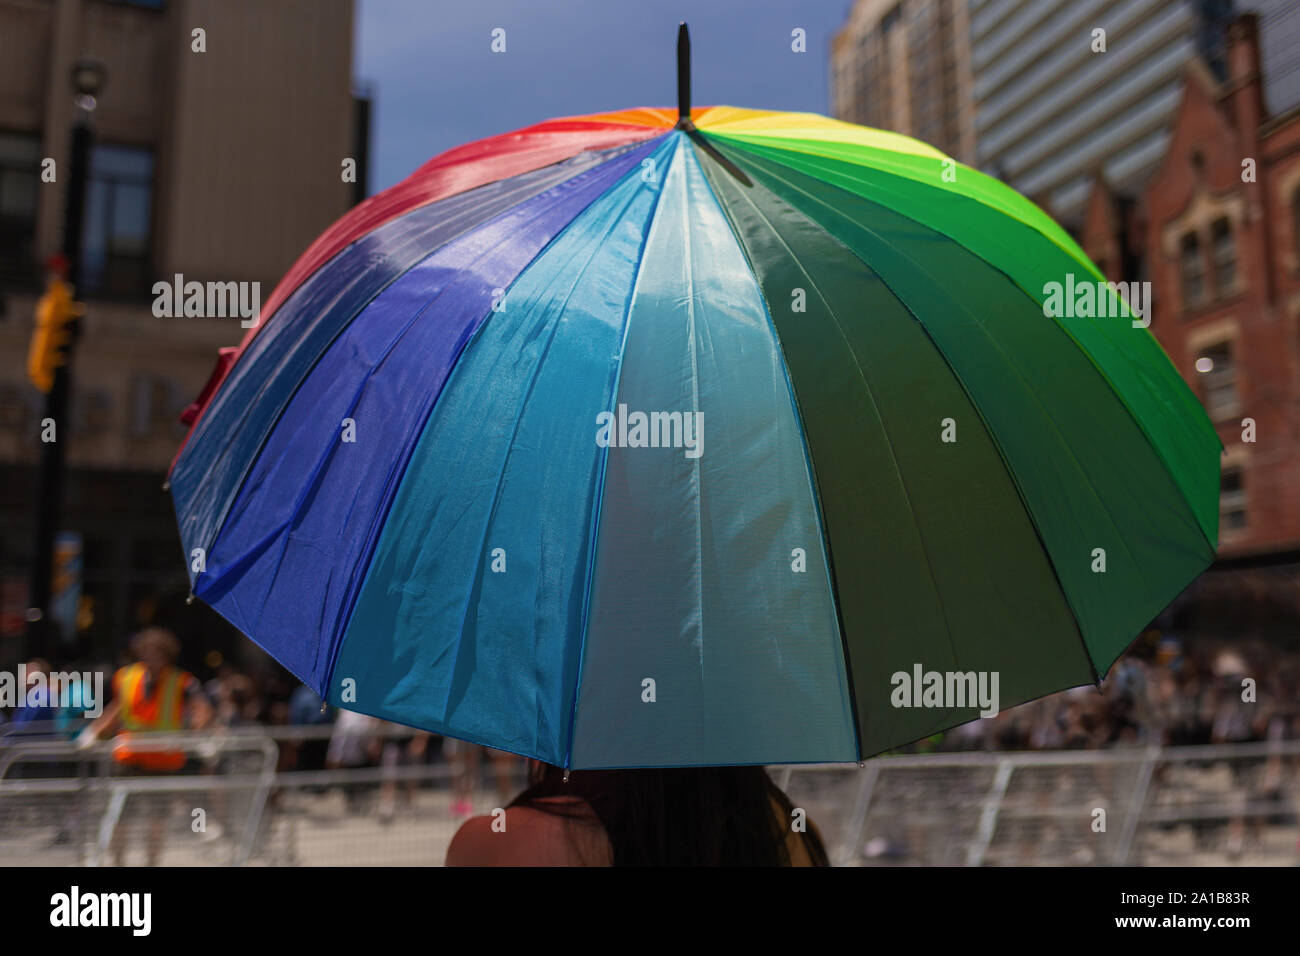 Photo of rainbow umbrella taken at Toronto Pride festival 2019 Stock Photo